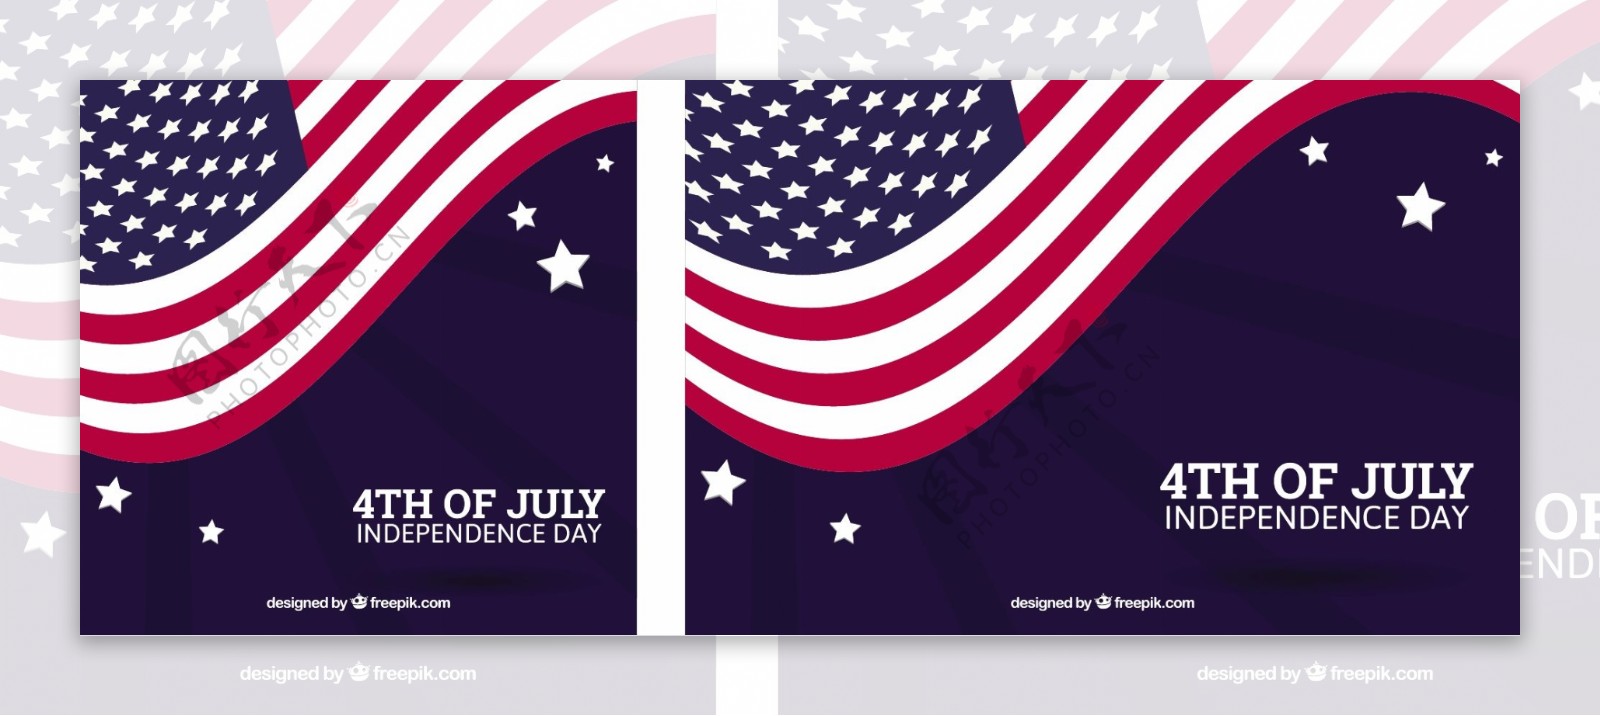 独立日背景与波浪美国国旗矢量设计素材